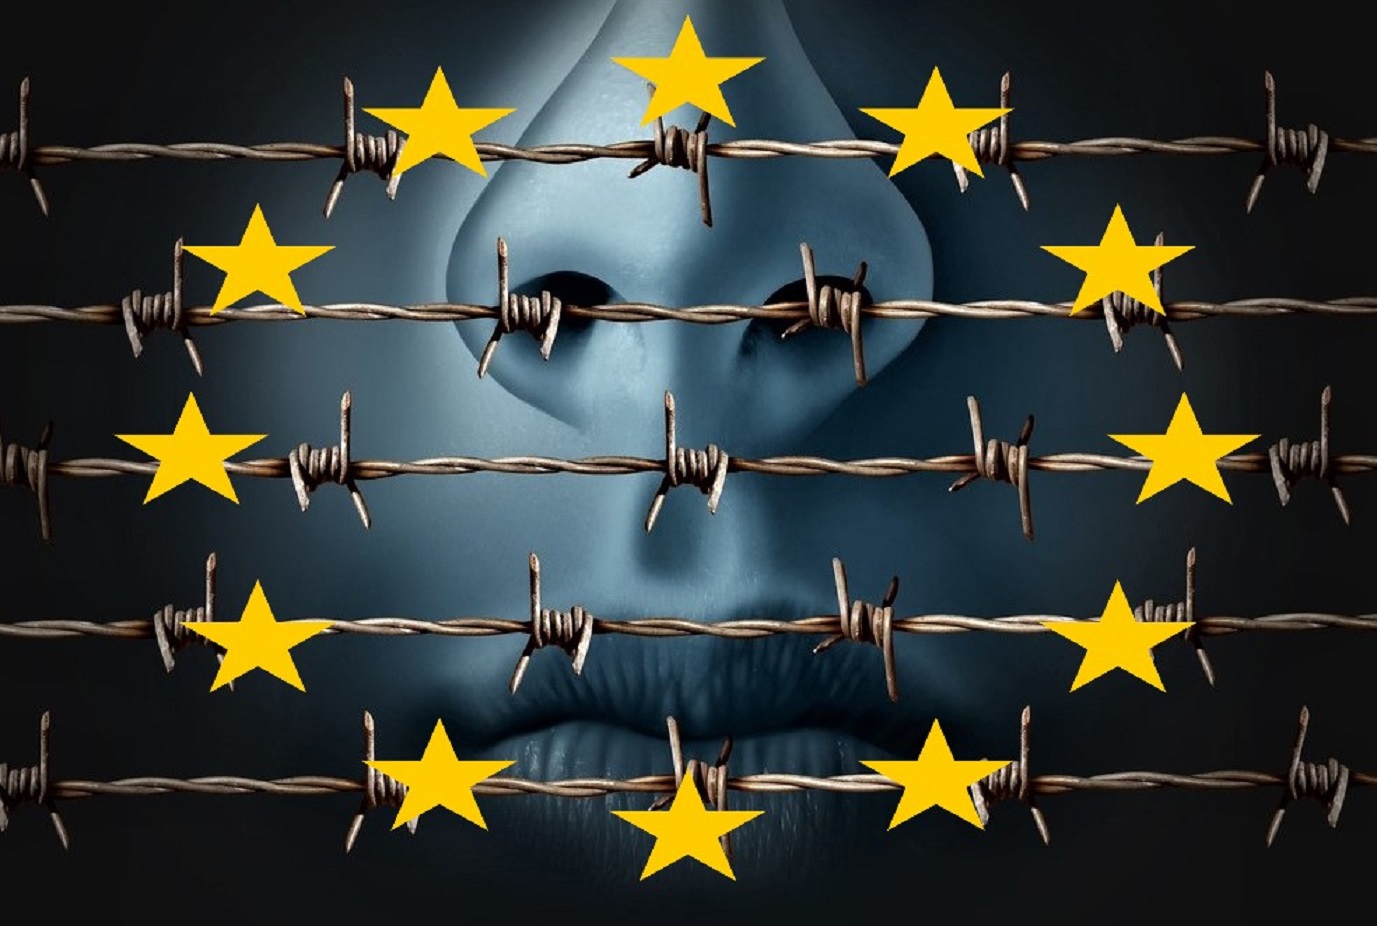 Artículo 13: La nueva ley europea para acabar con Internet (Video)